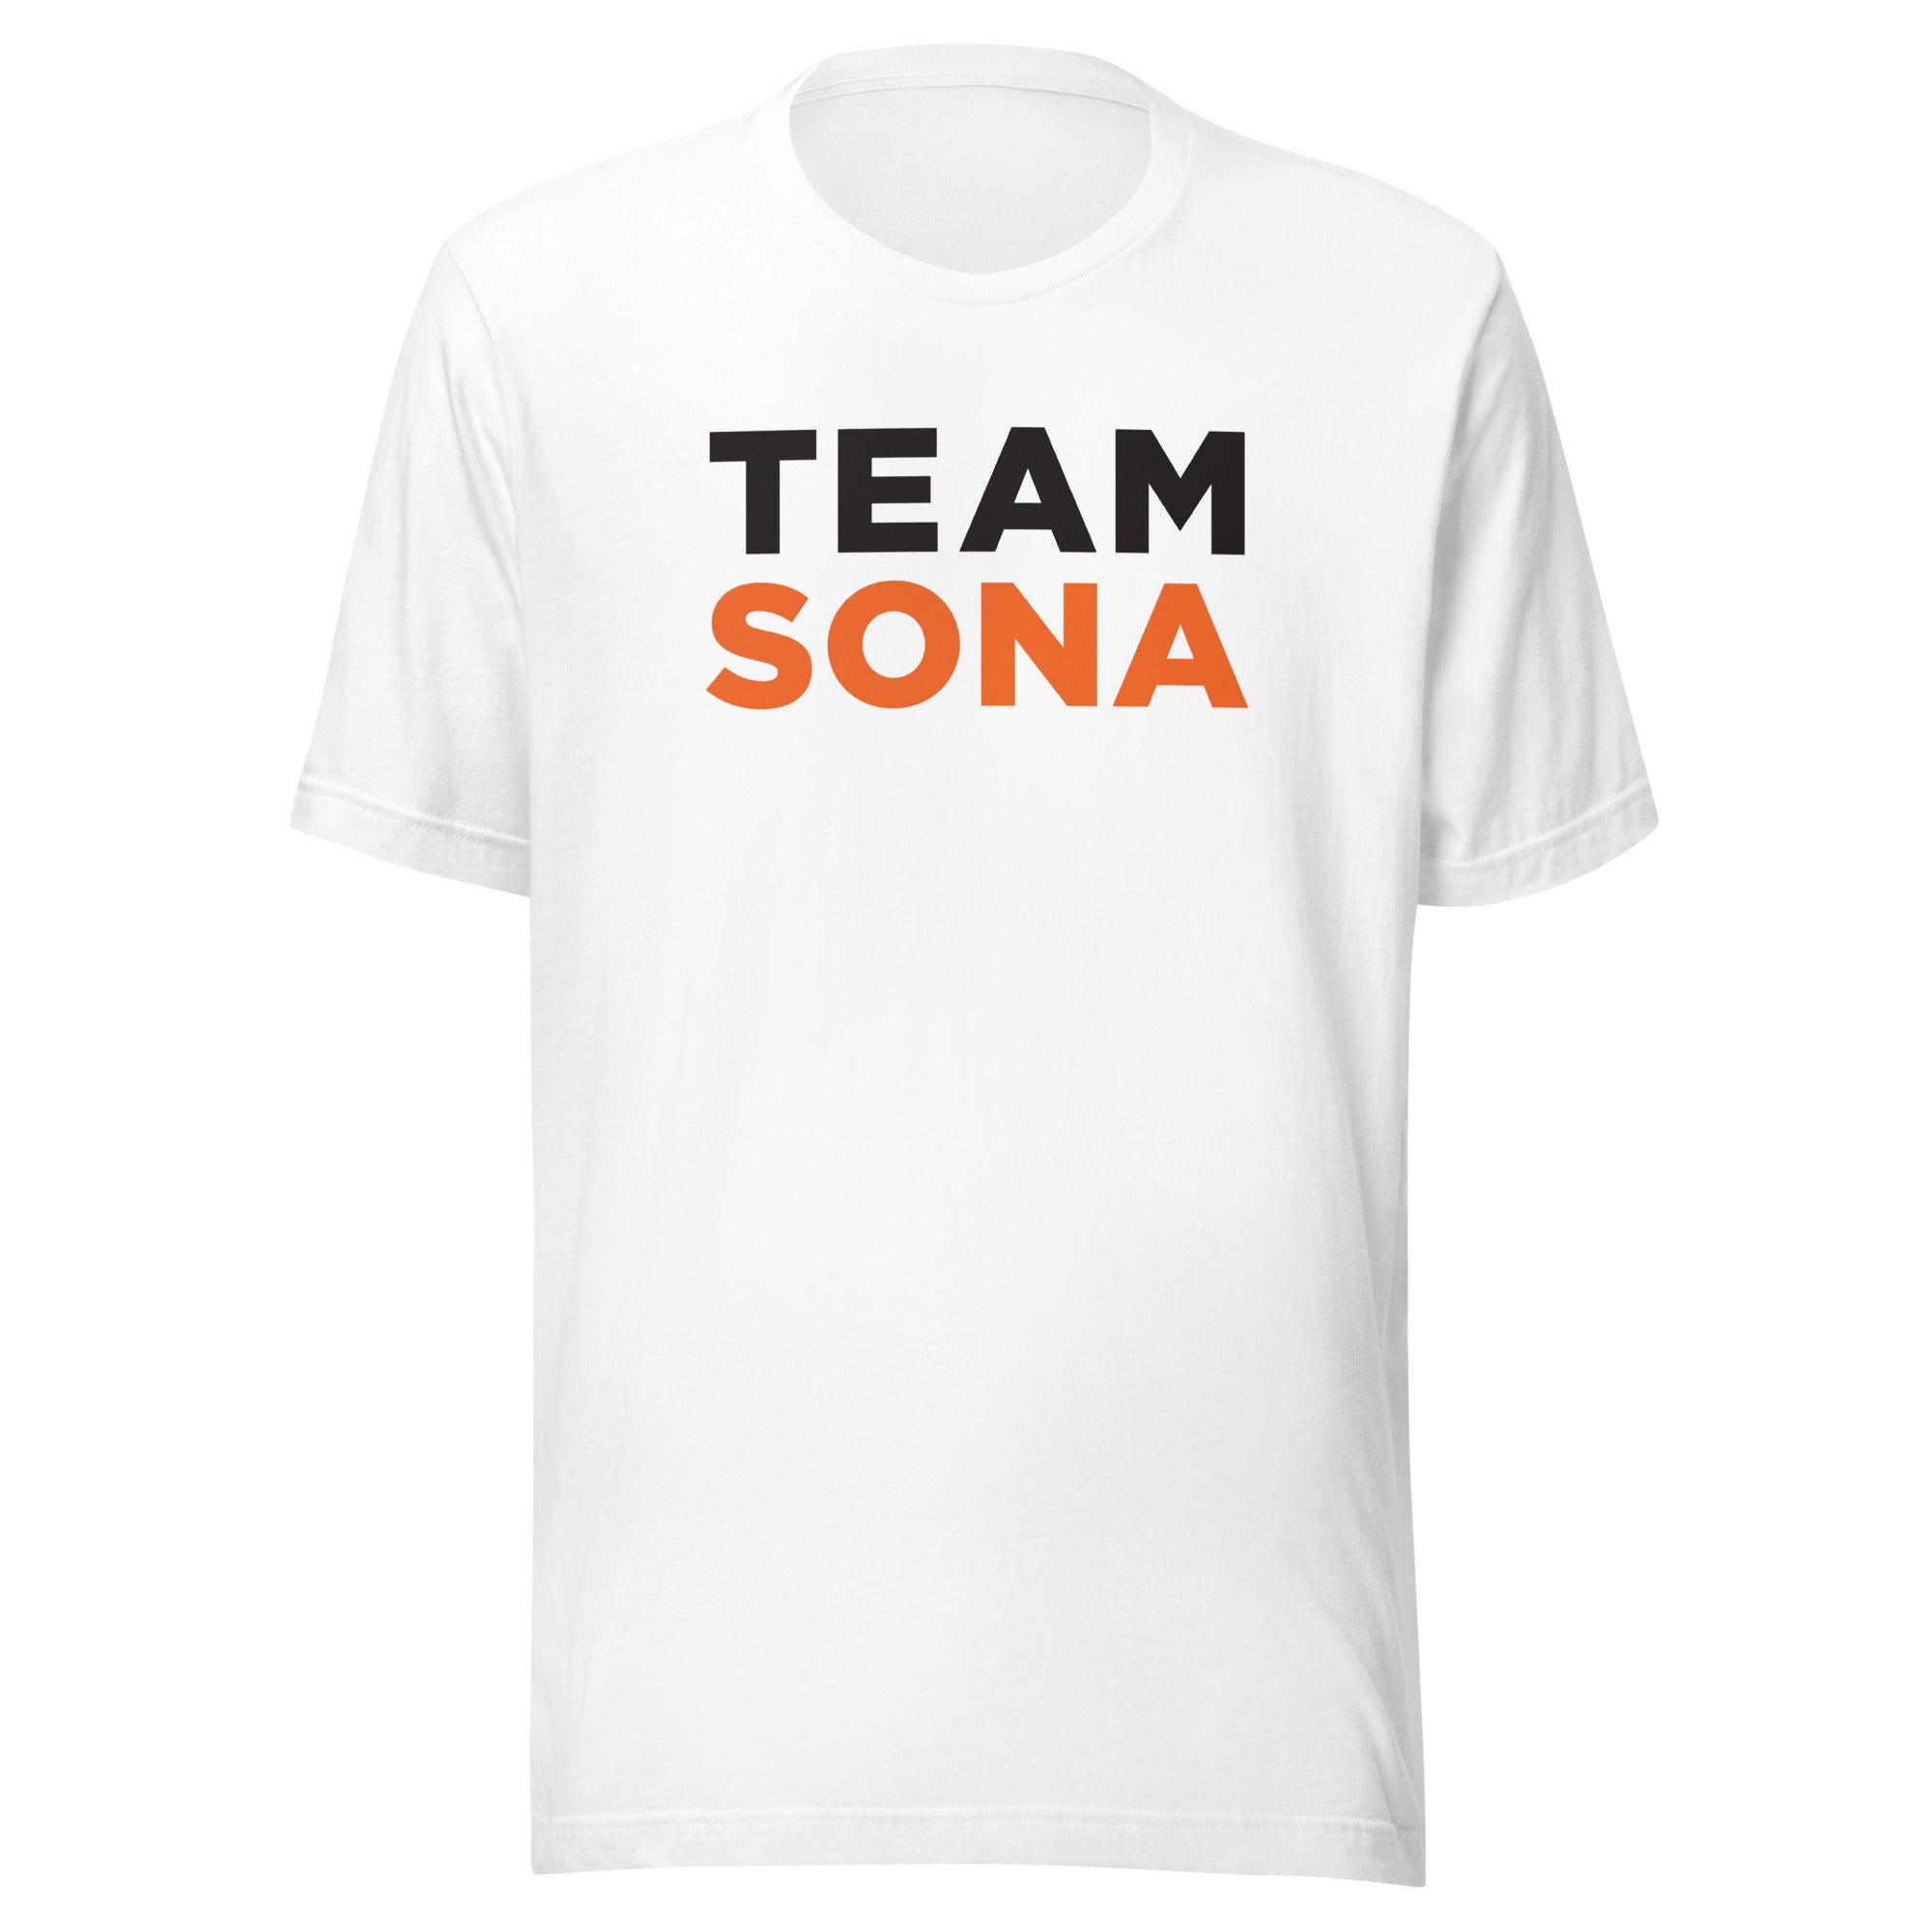 Conan O'Brien Needs A Friend: Team Sona T-shirt (White)